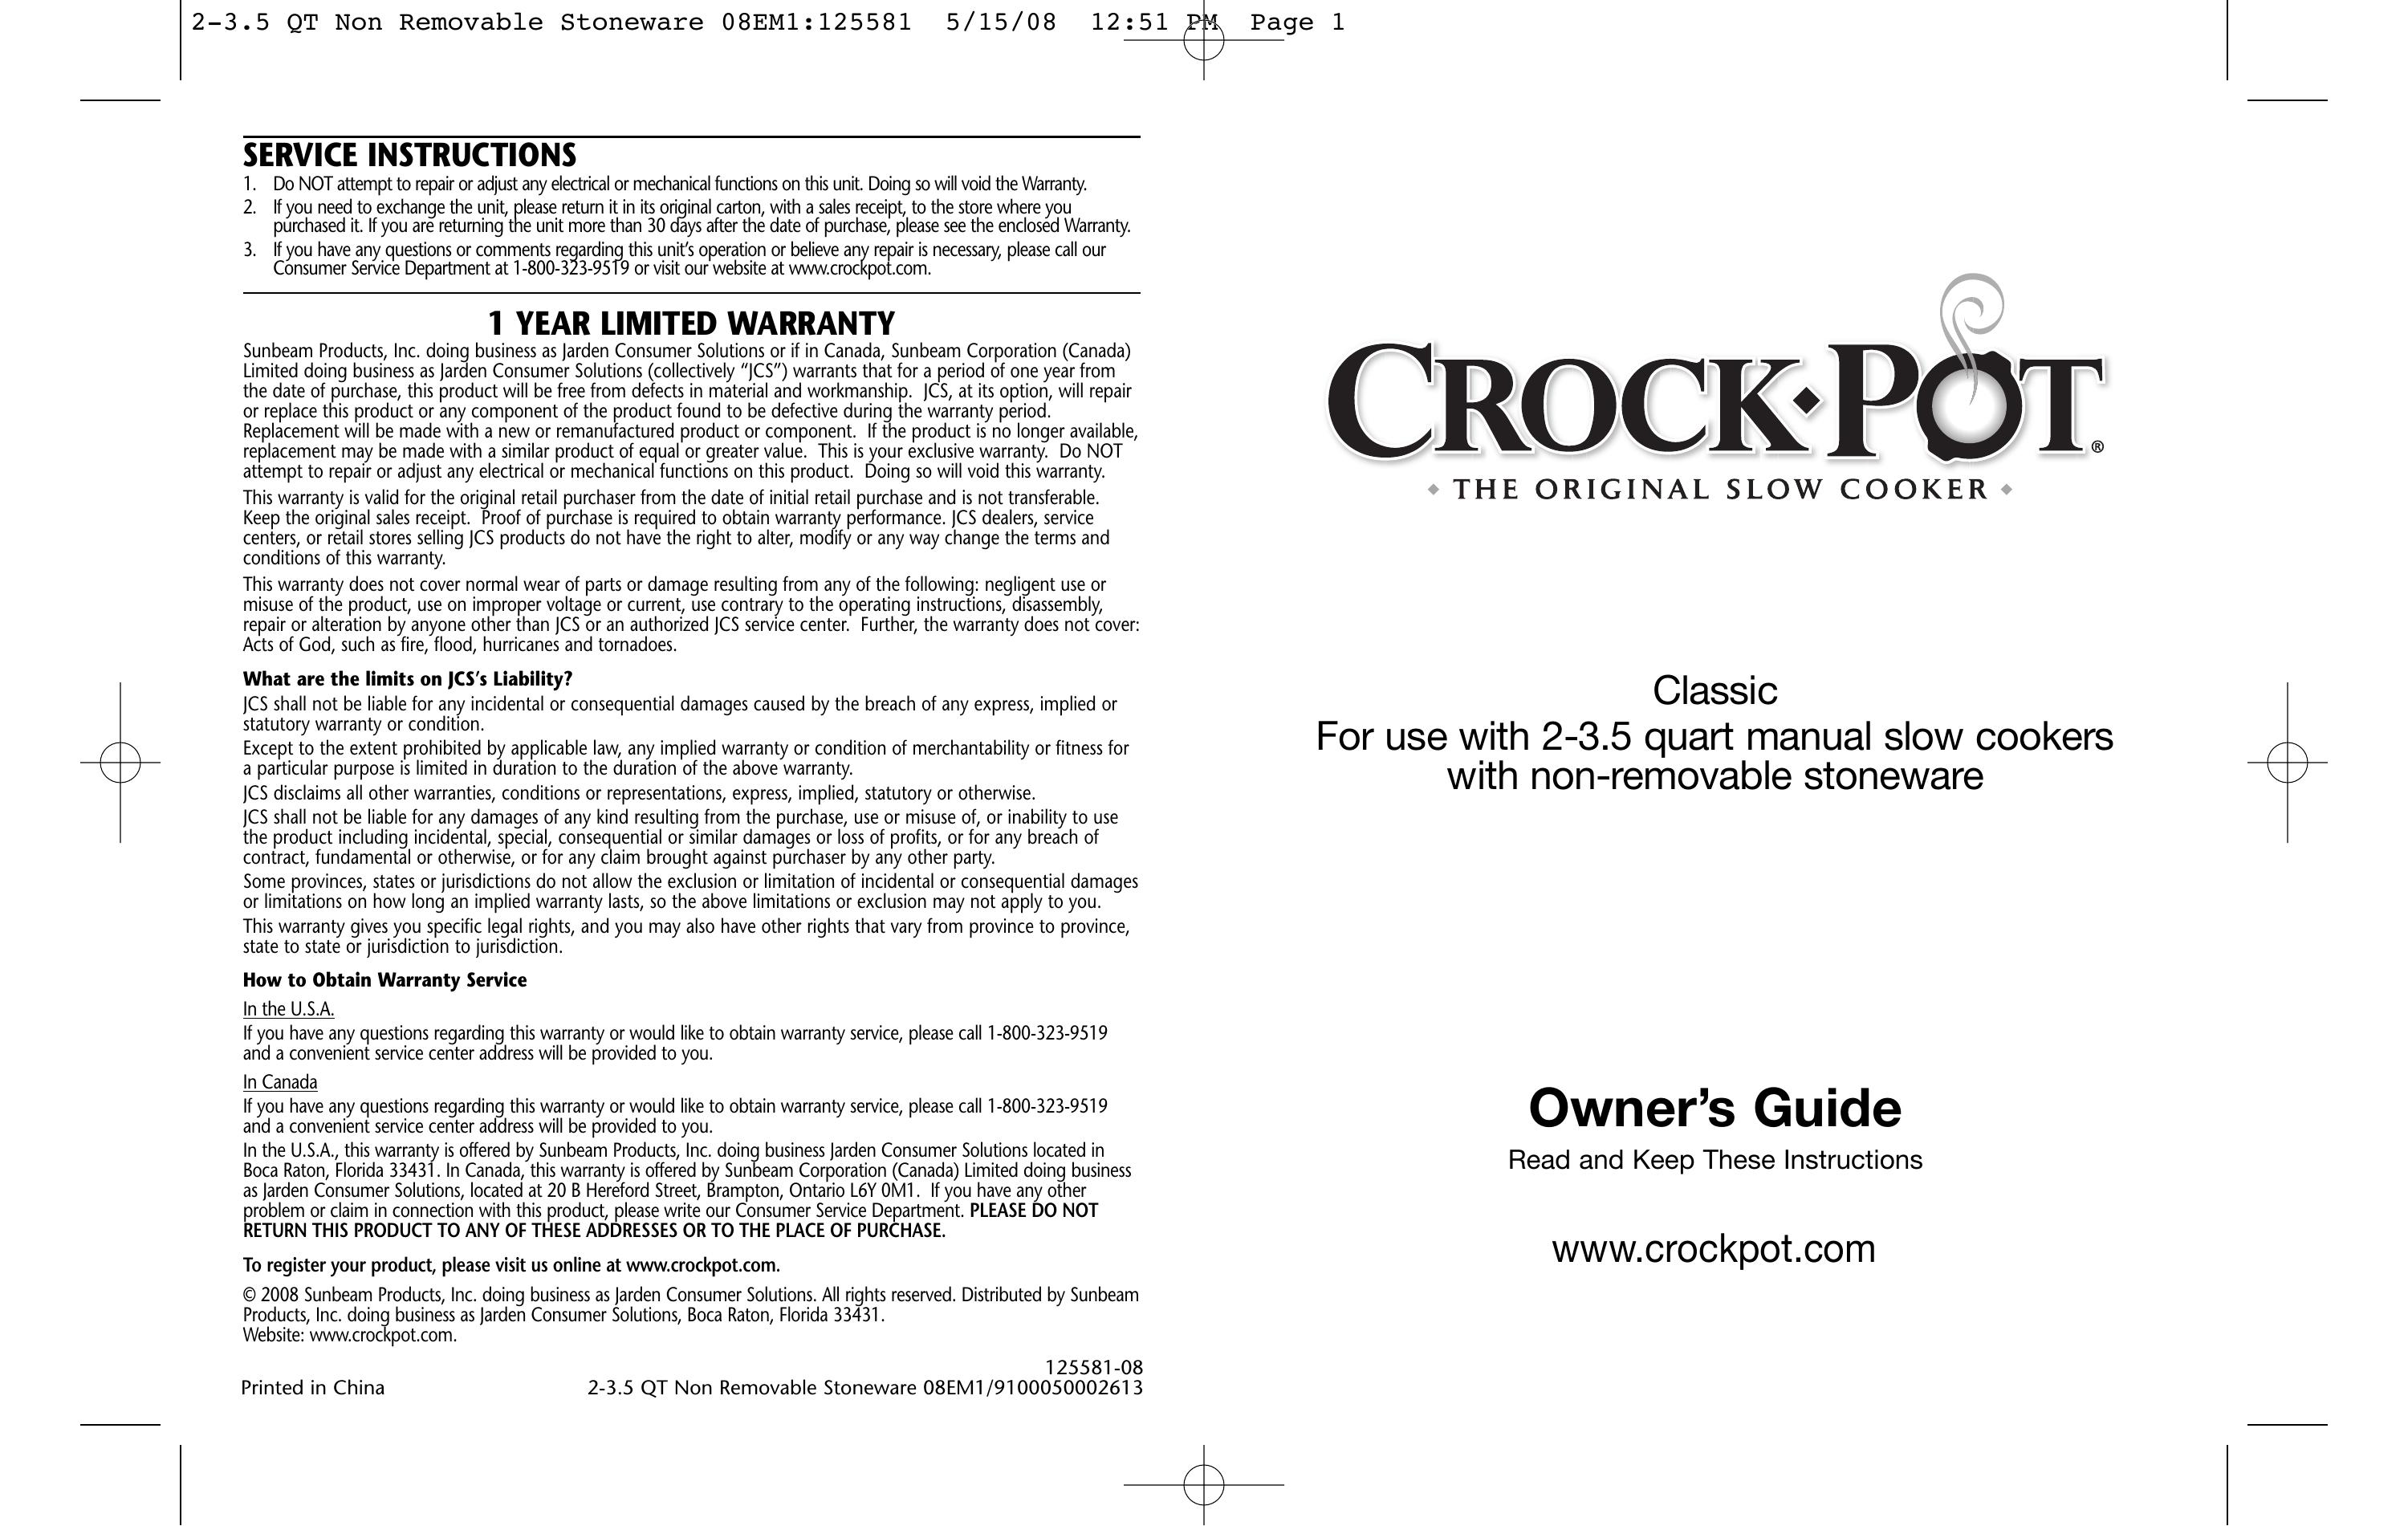 Crock-Pot Classic 2-3.5 Quart Slow Cooker User Manual